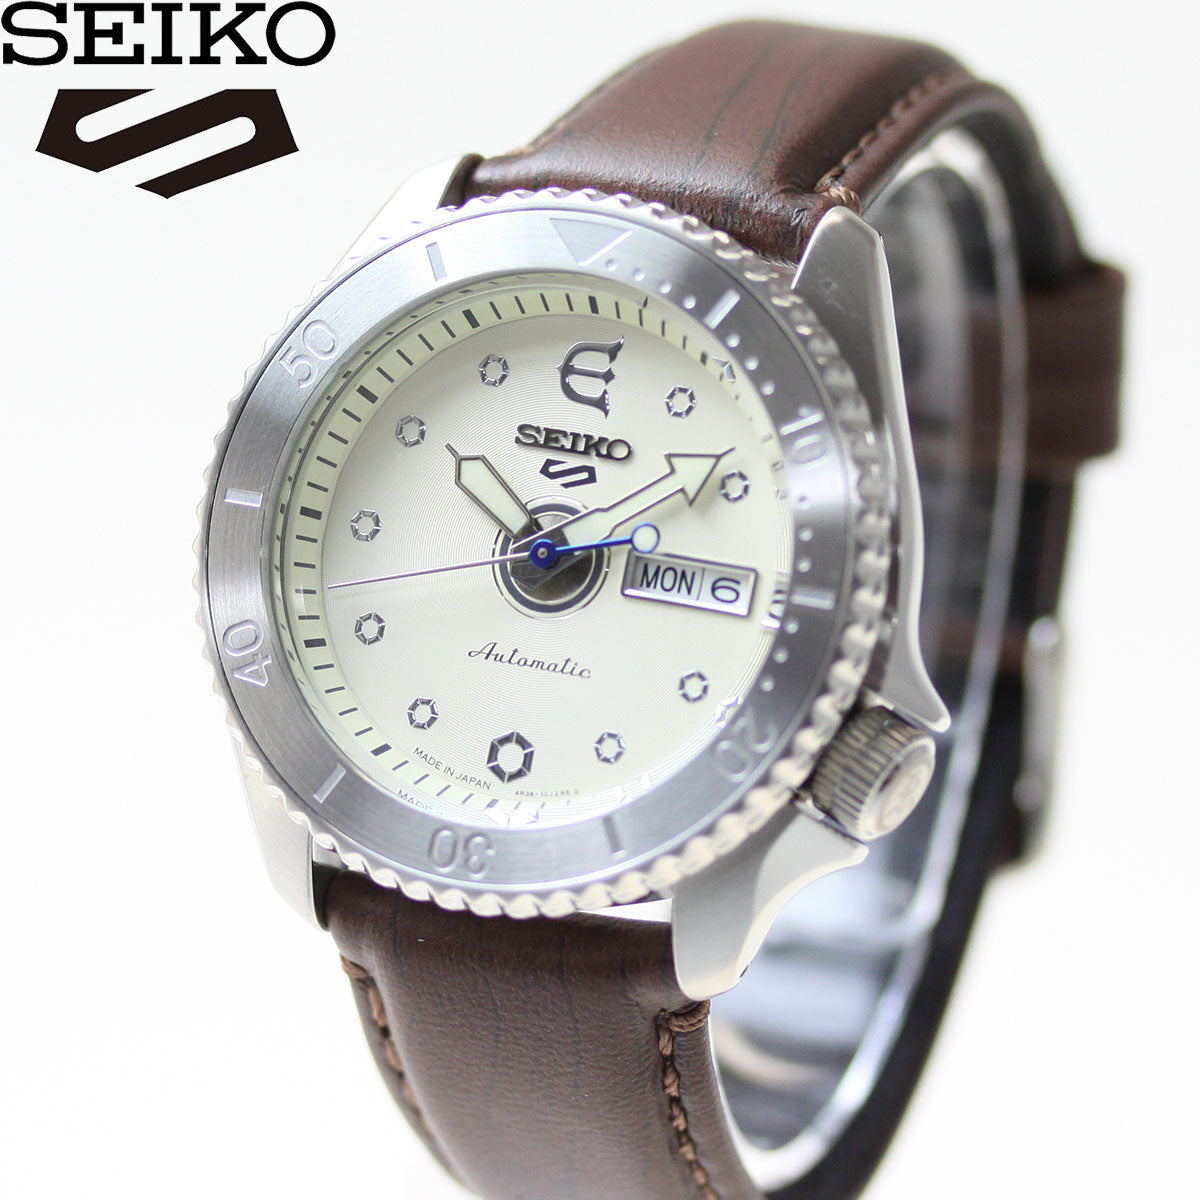 セイコー5 スポーツ SEIKO 5 SPORTS × EVISEN SKATEBOARDS コラボ 限定モデル 自動巻き メカニカル 腕時計 メンズ セイコーファイブ センス Sense SBSA103